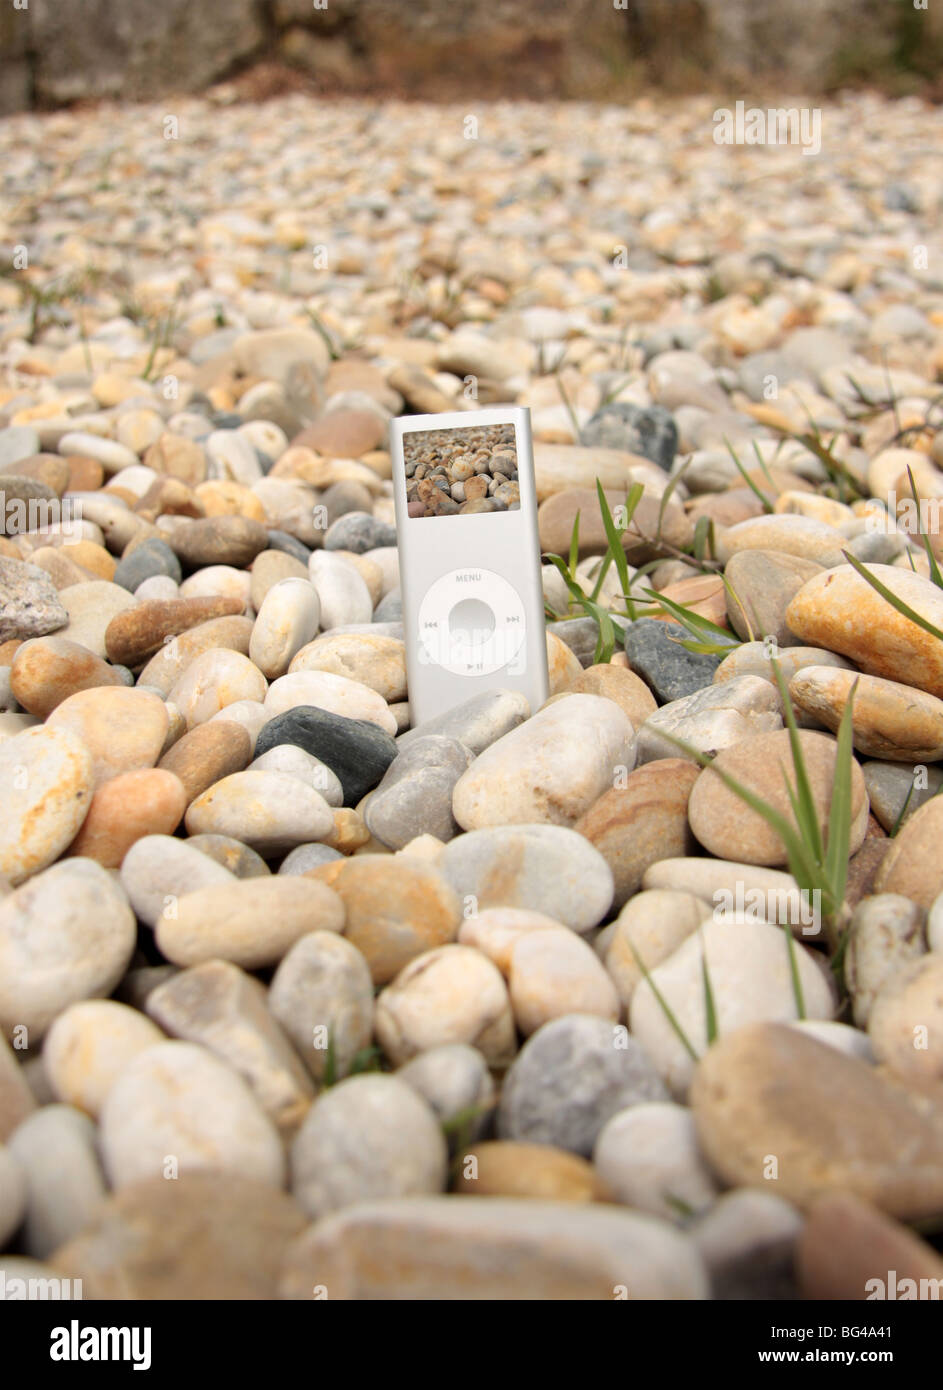 (Ipod Mp3 Player graved stile) en el suelo con rocas alrededor de él Foto de stock